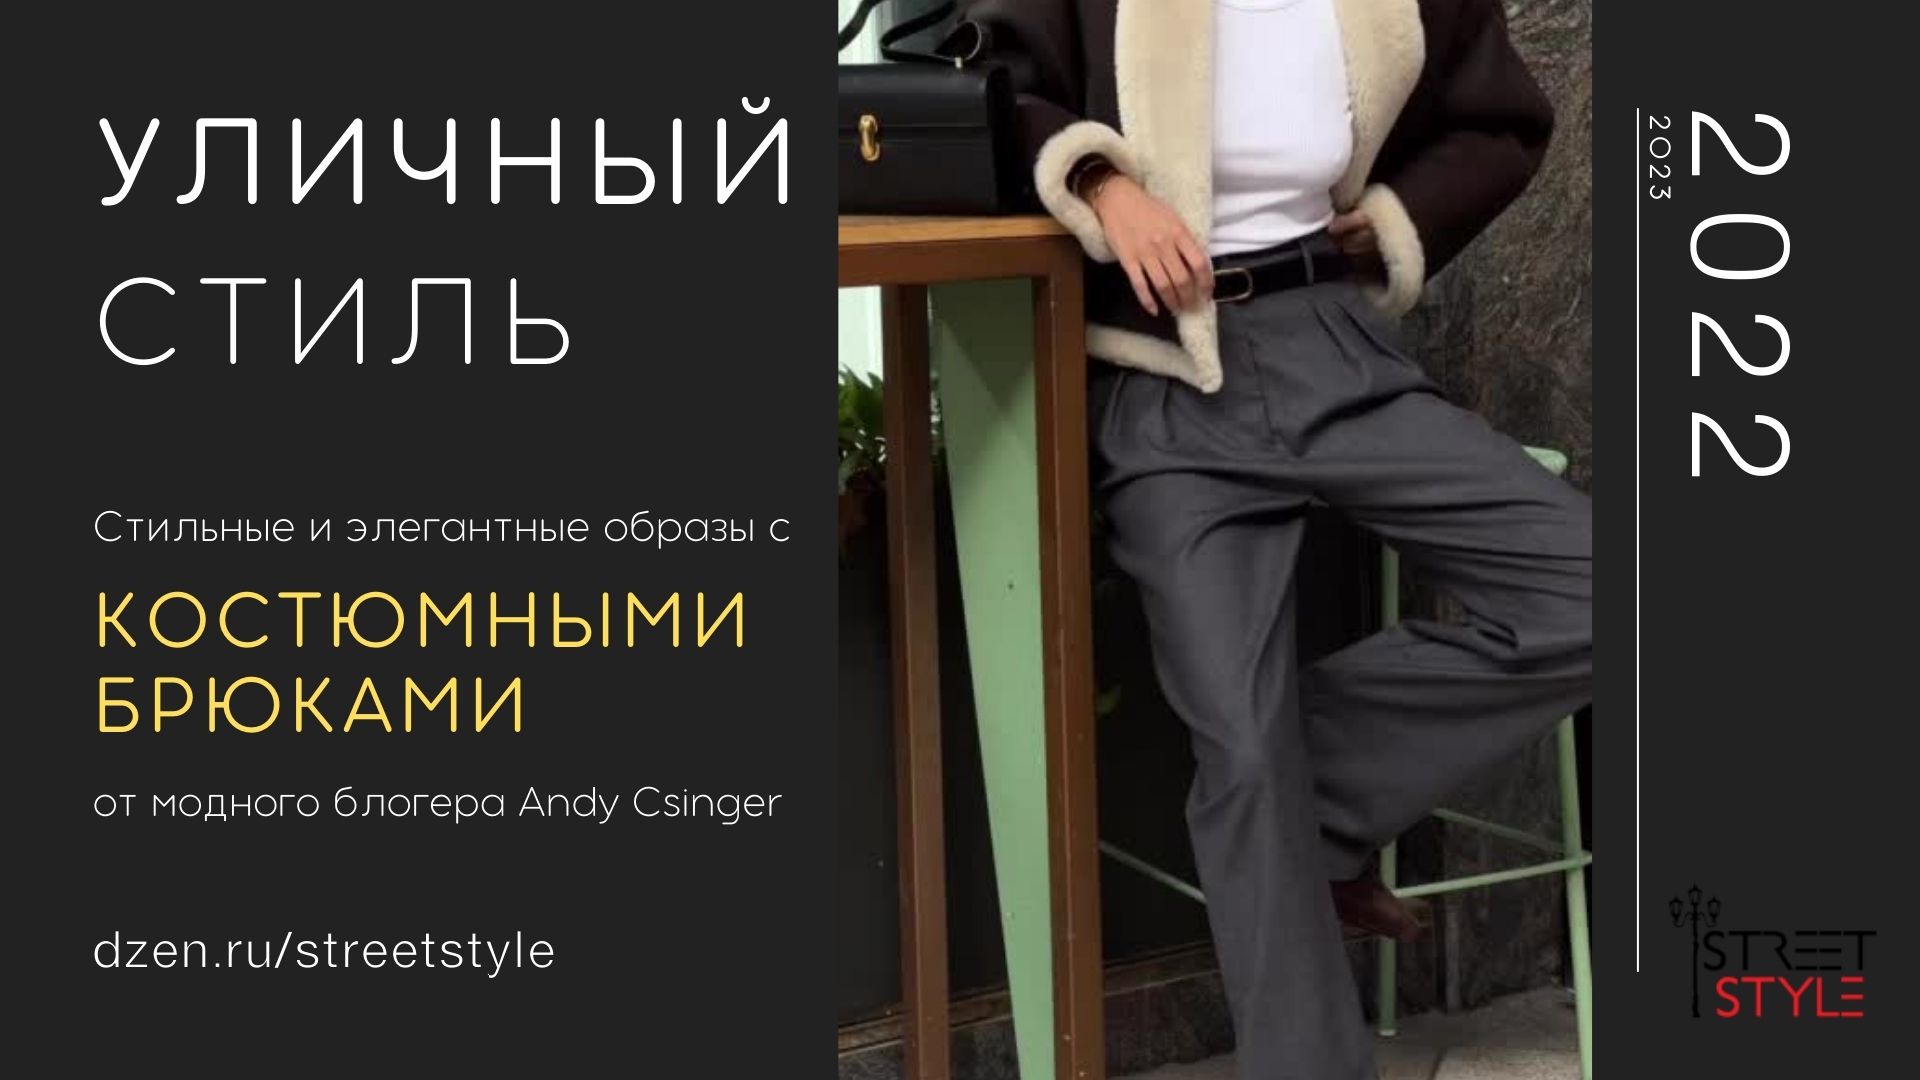 Стильные и элегантные образы с костюмными брюками от модного блогера Andy Csinger